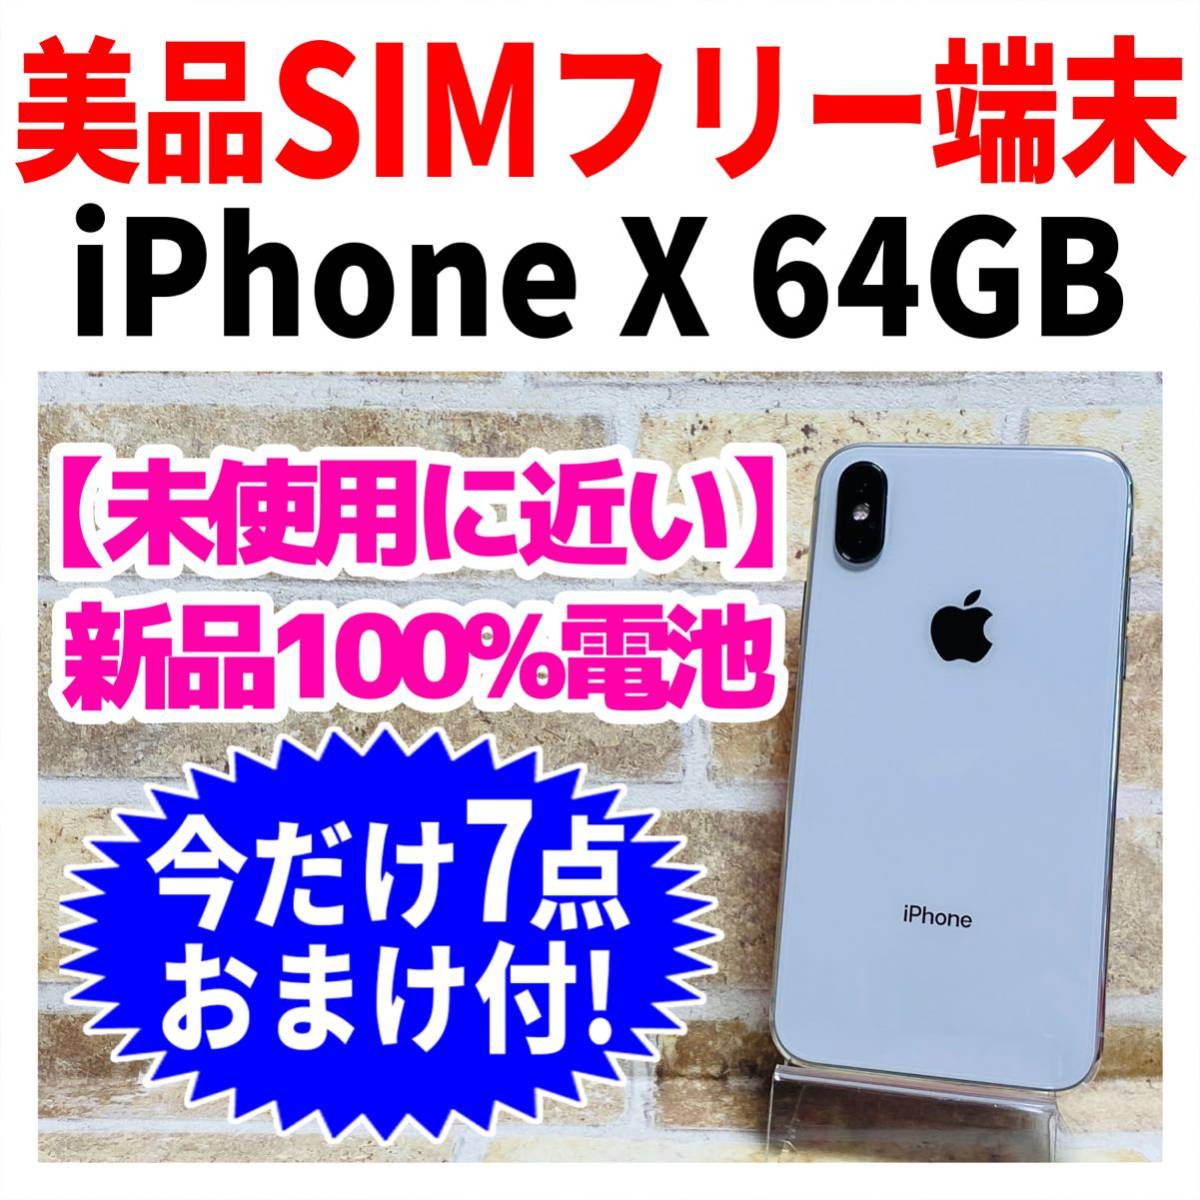 優れた品質 iPhone X SIMフリー 64GB 完動品 iPhoneX シルバー